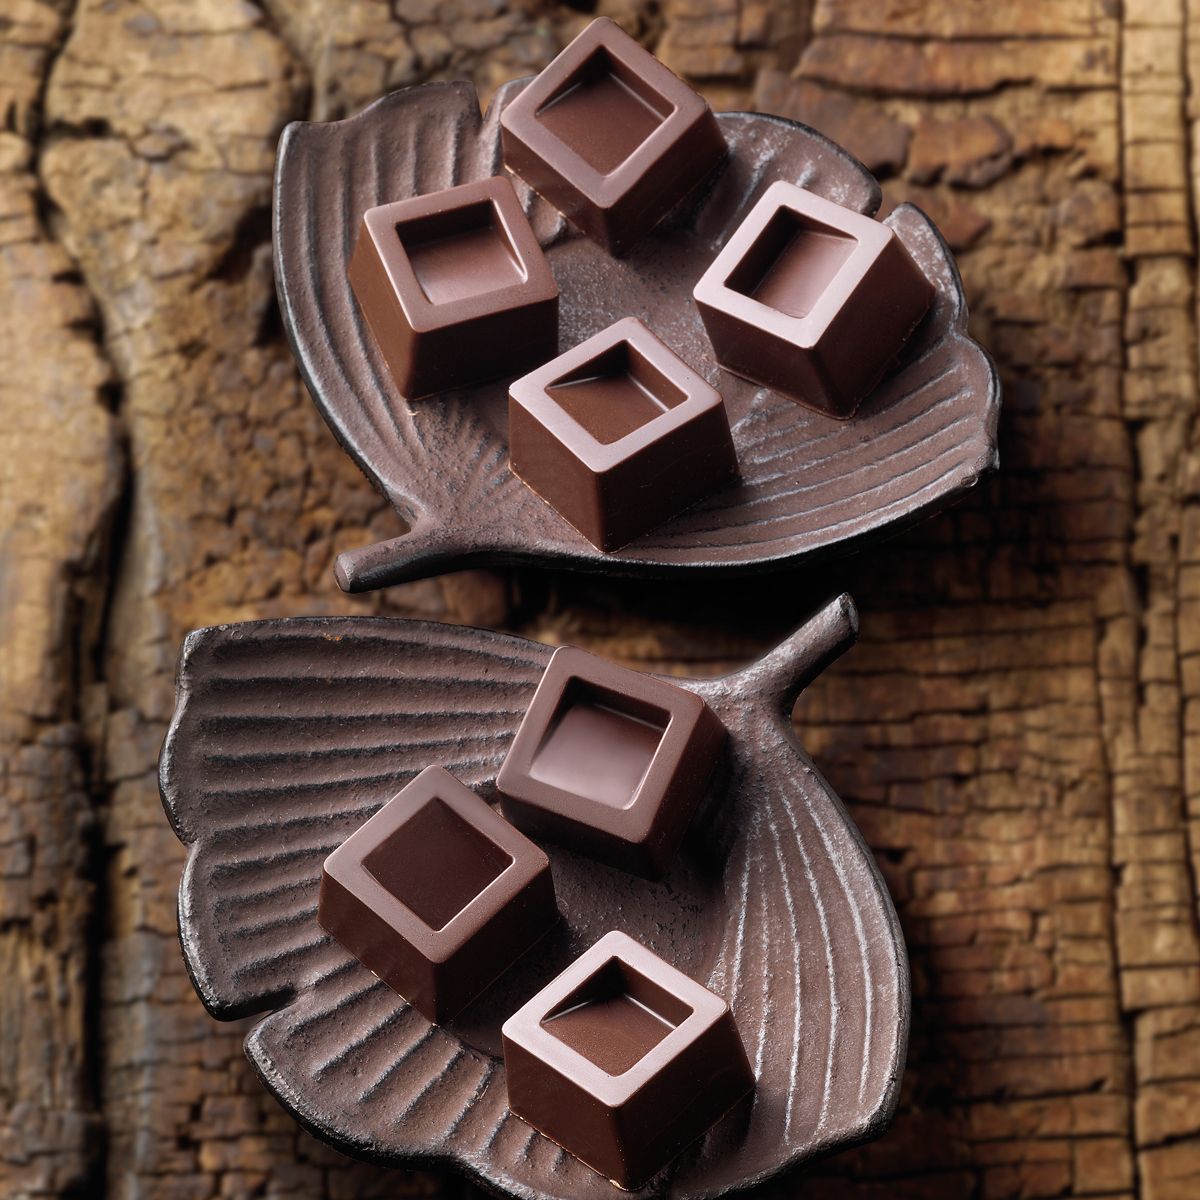 Fyrkantiga praliner tillverkade med chokladform i silikon